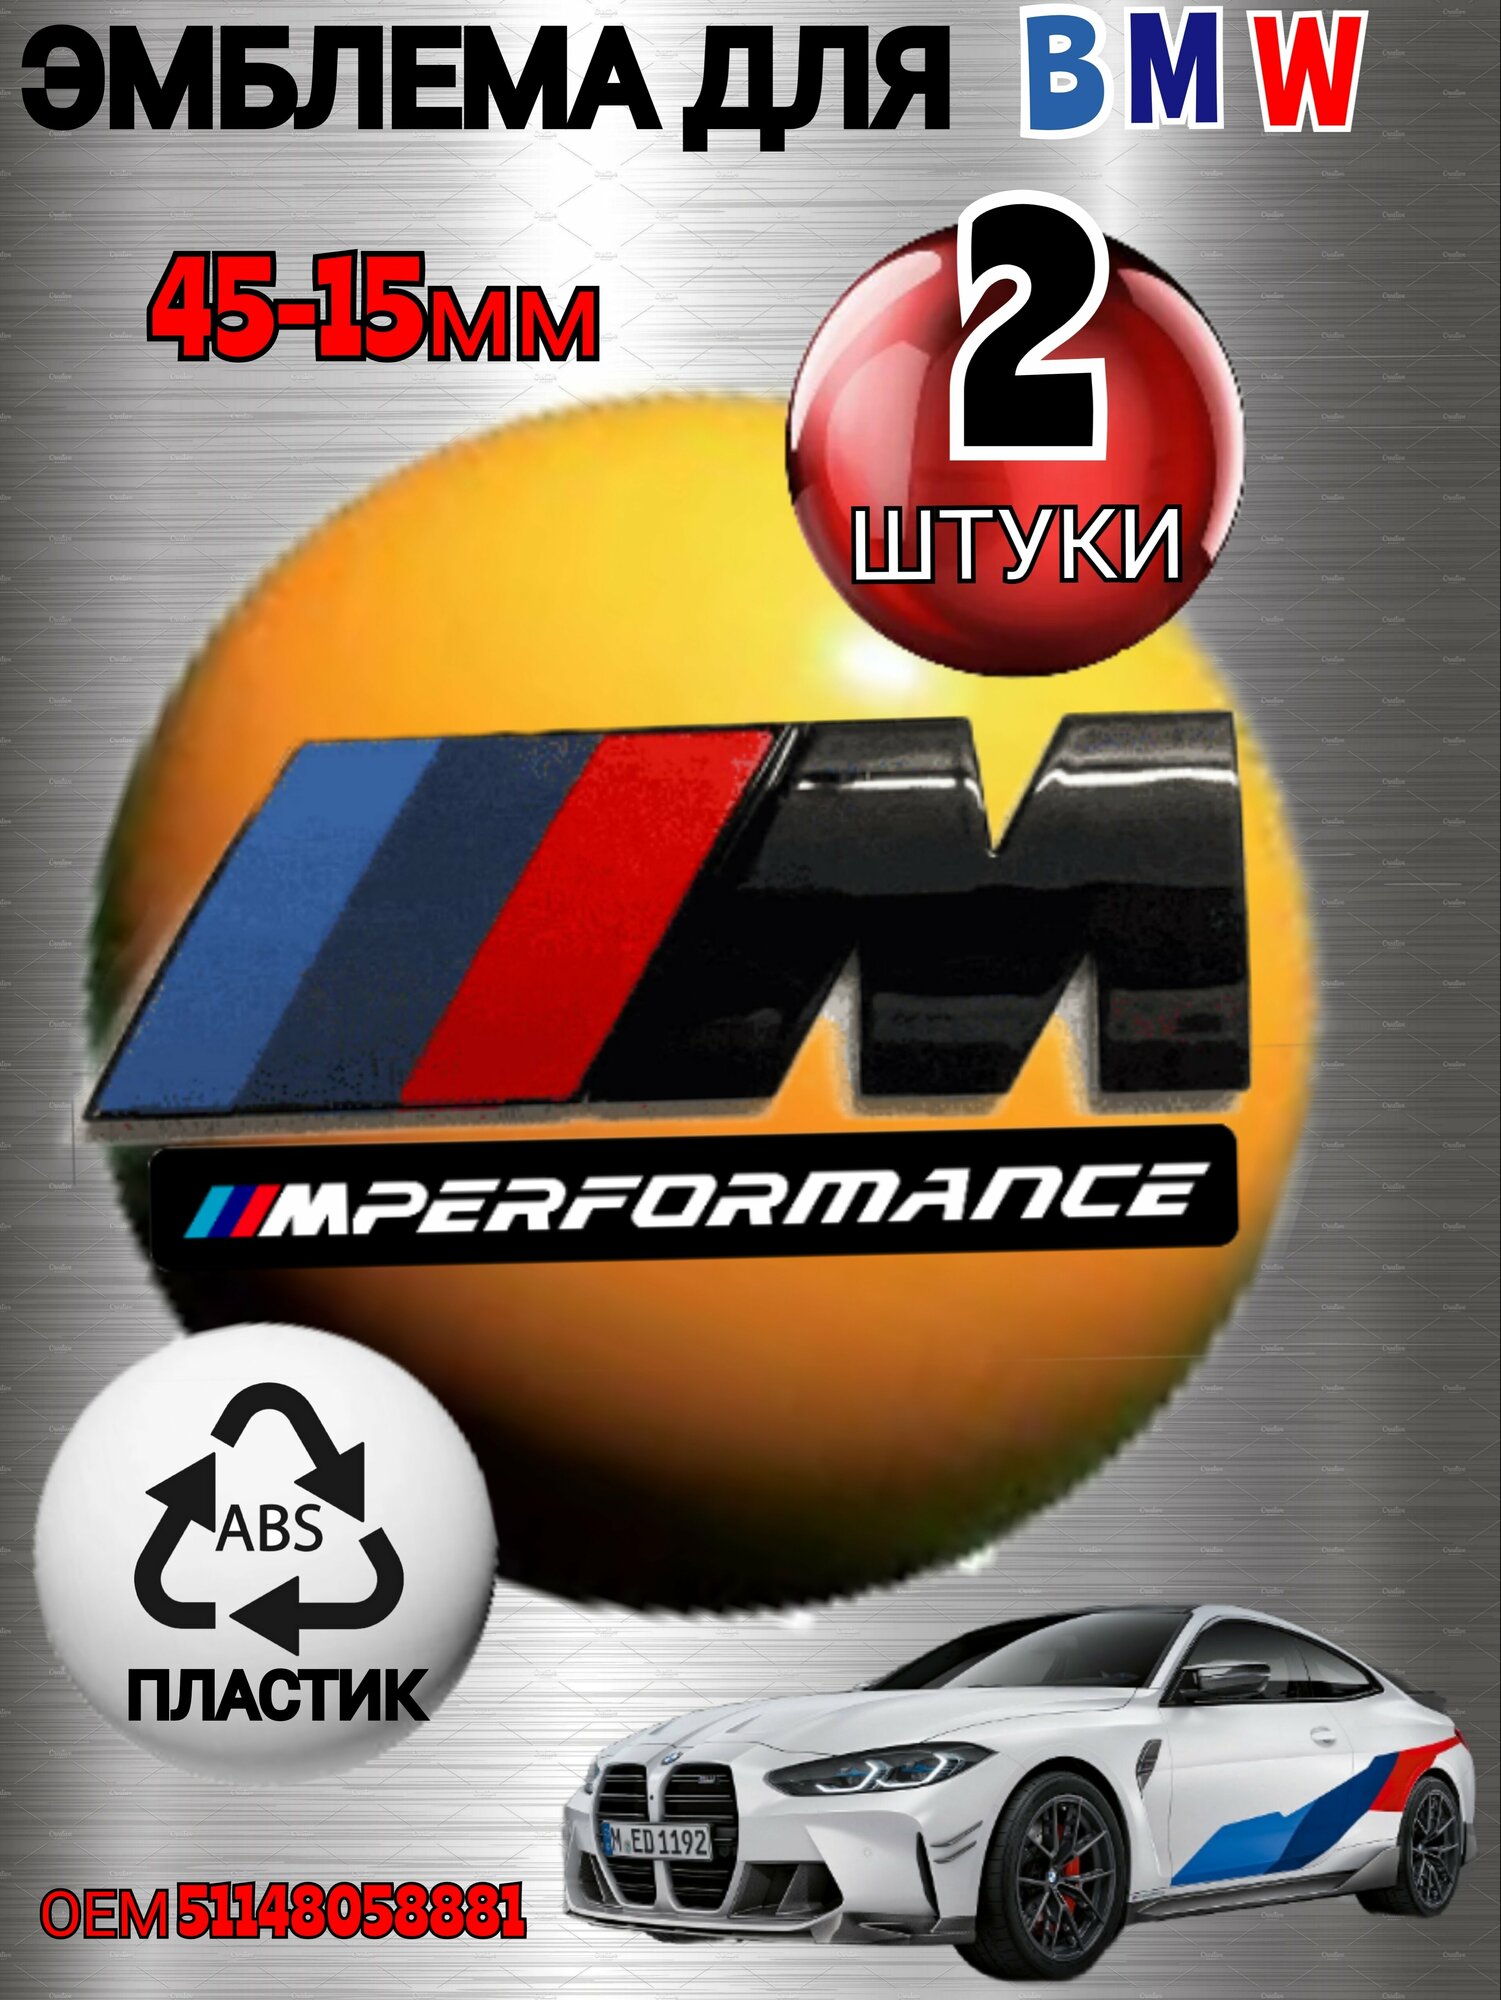 Шильдик (эмблема, надпись) для автомобия BMW БМВ на крыло M-performance 45-15 мм цвет черный глянец 2 штуки